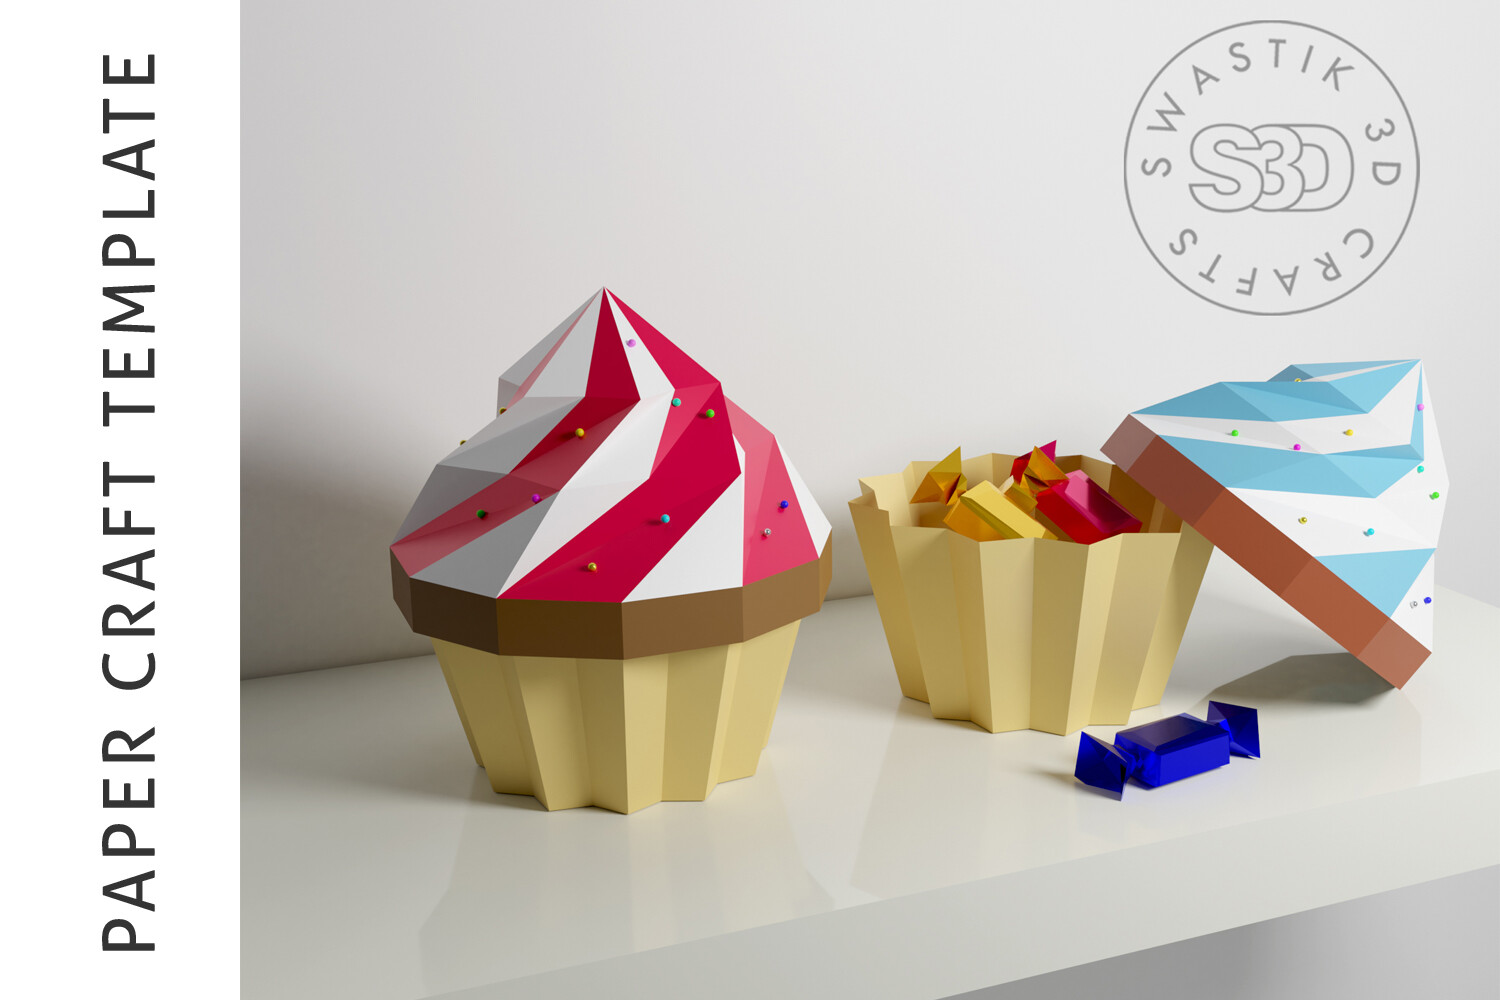 cupcake box printable